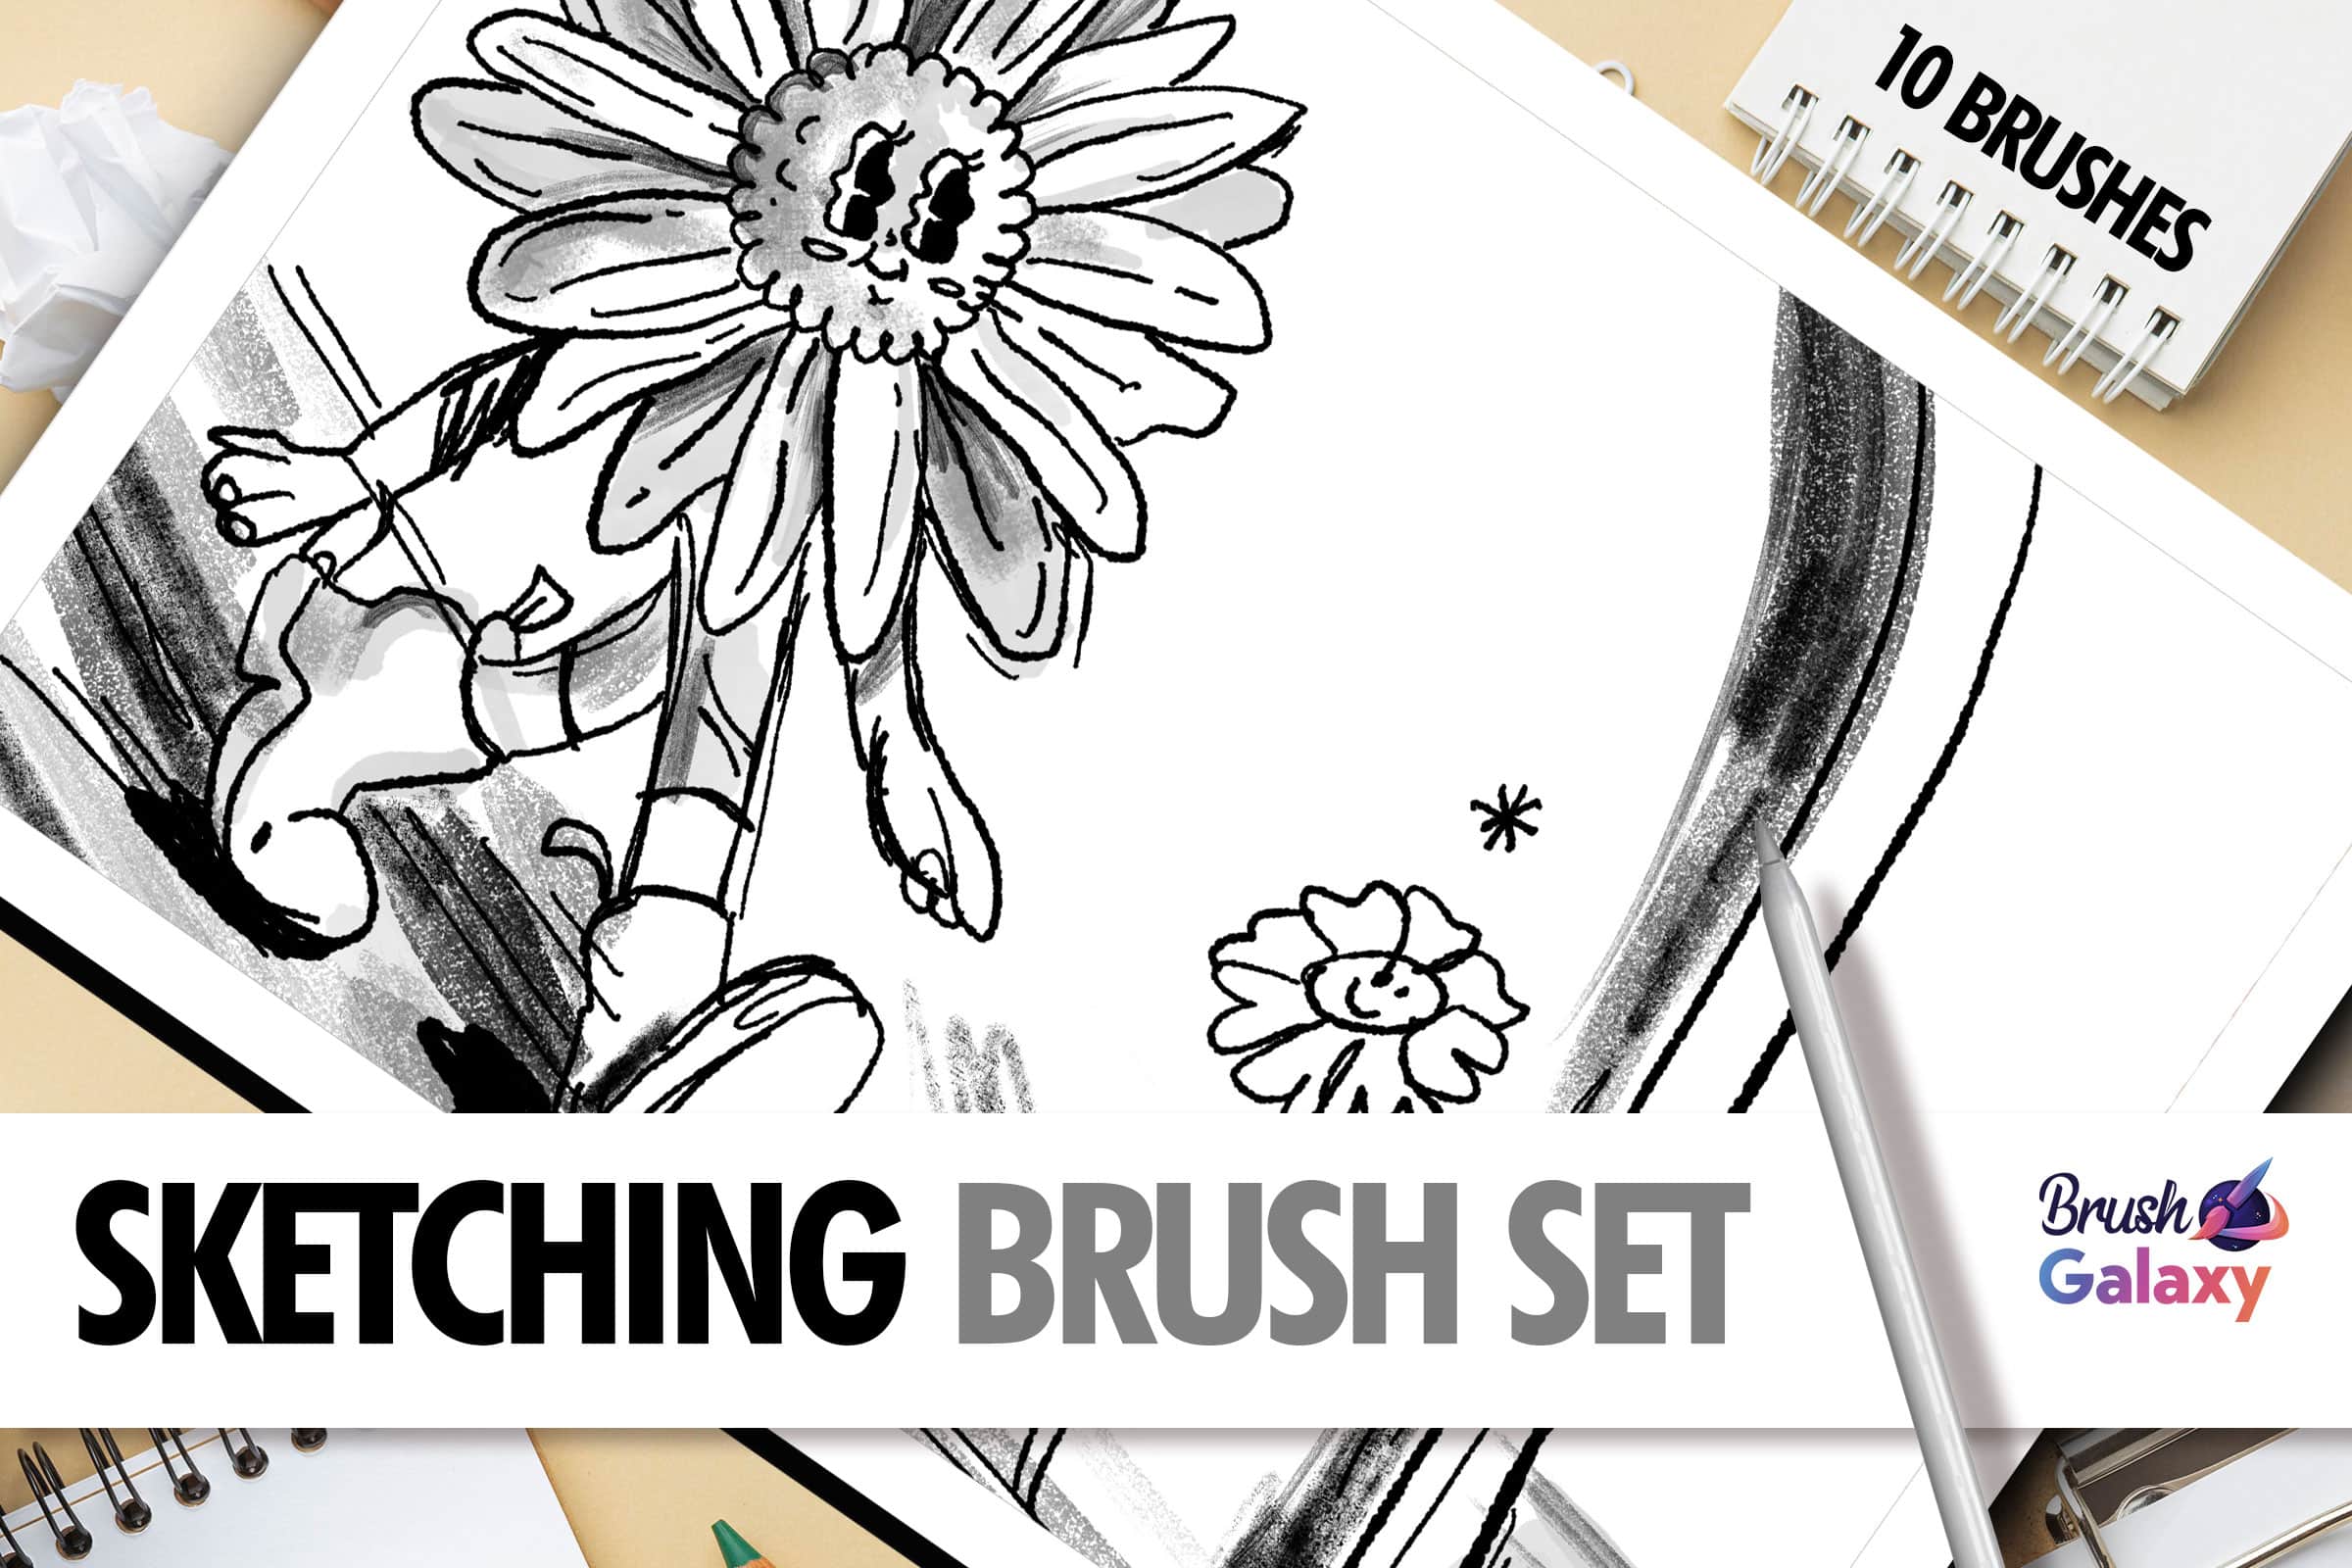 Sketching Brush Set